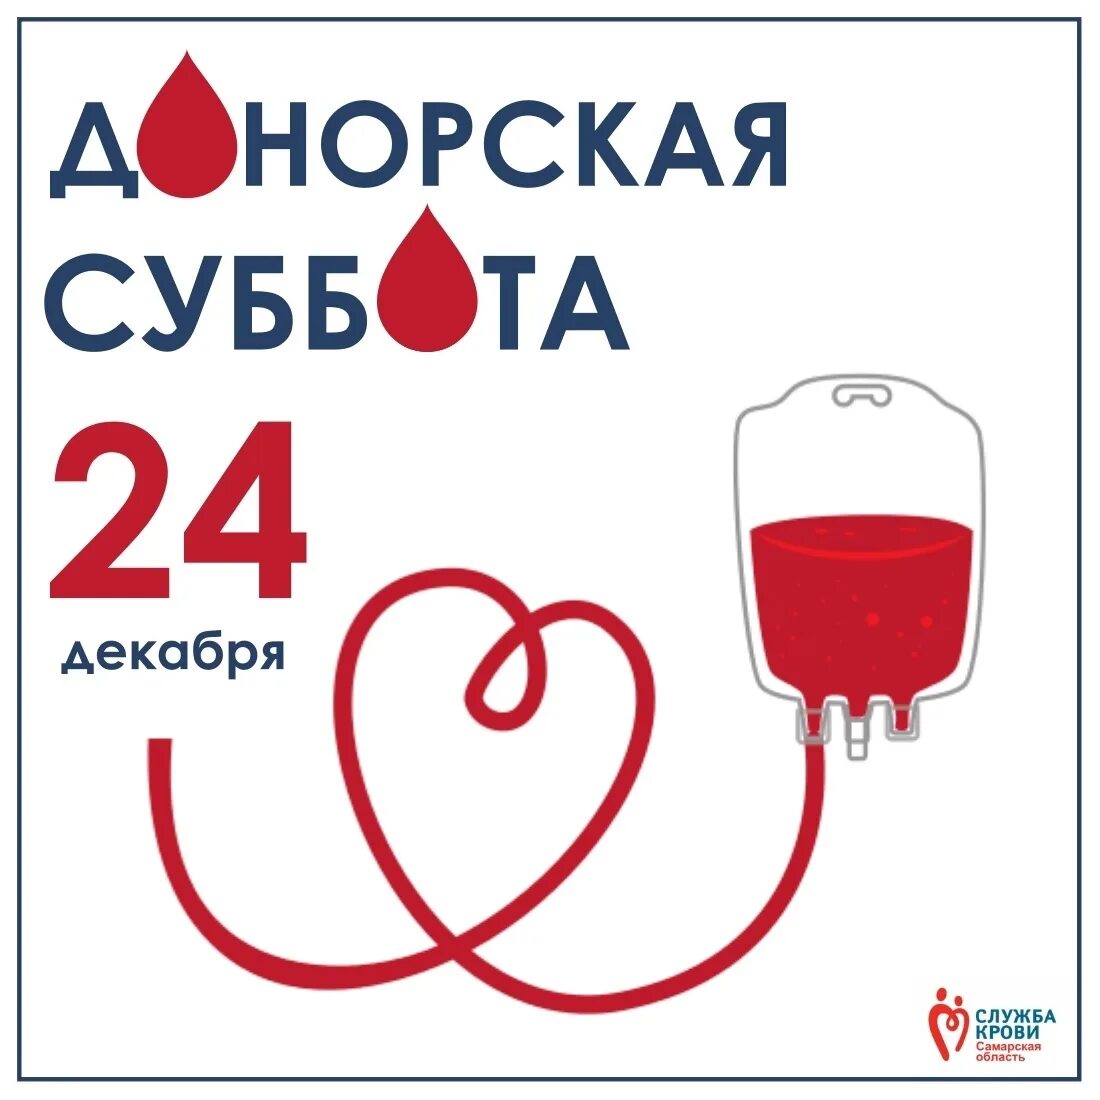 Служба крови телефон. Служба крови. День донора служба крови. Служба крови реклама. Служба крови картинки.